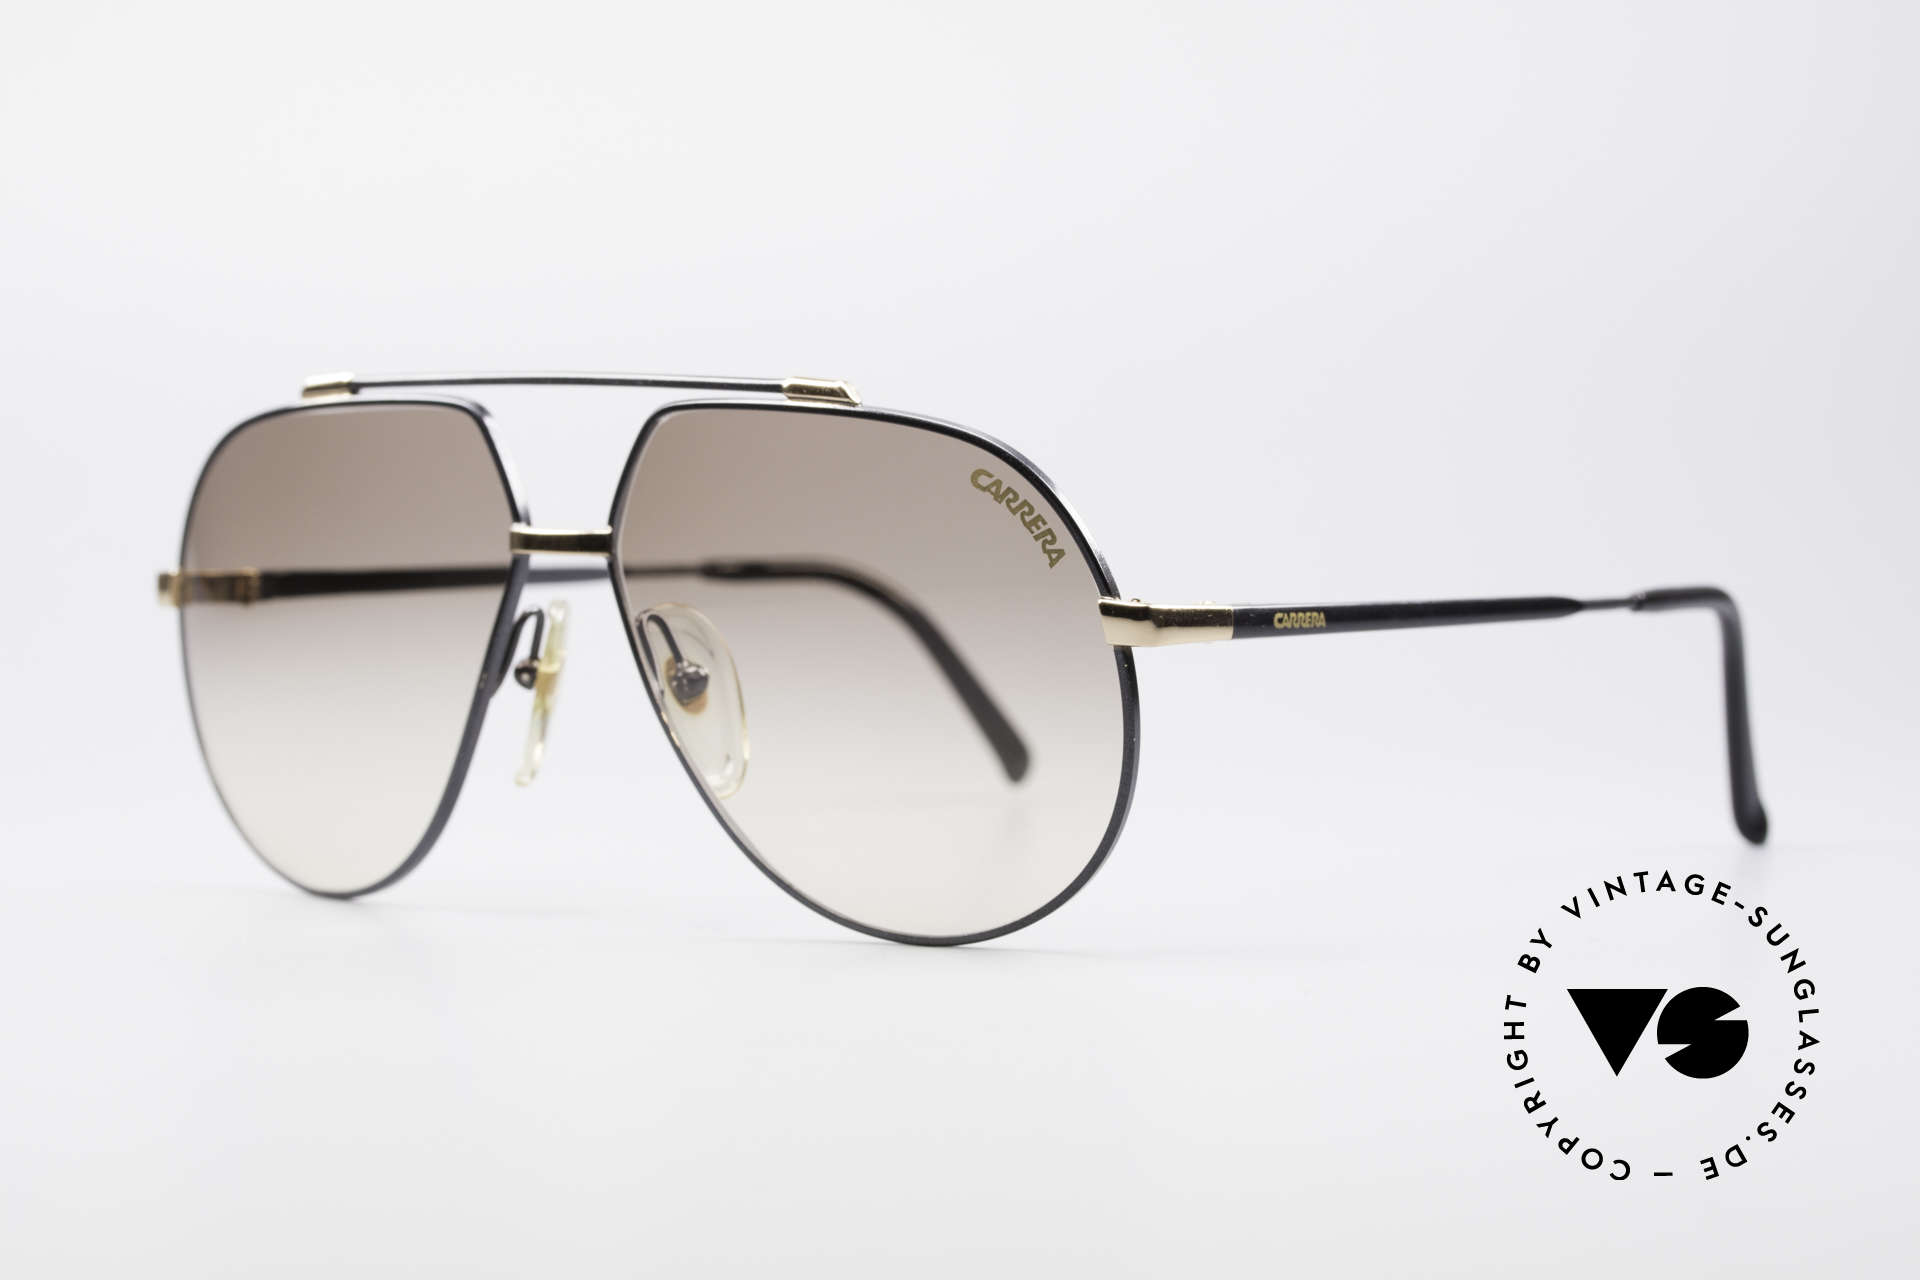 Carrera 5369 90er Herren Sonnenbrille, fühlbare Top-Verarbeitung & hoher Tragekomfort, Passend für Herren